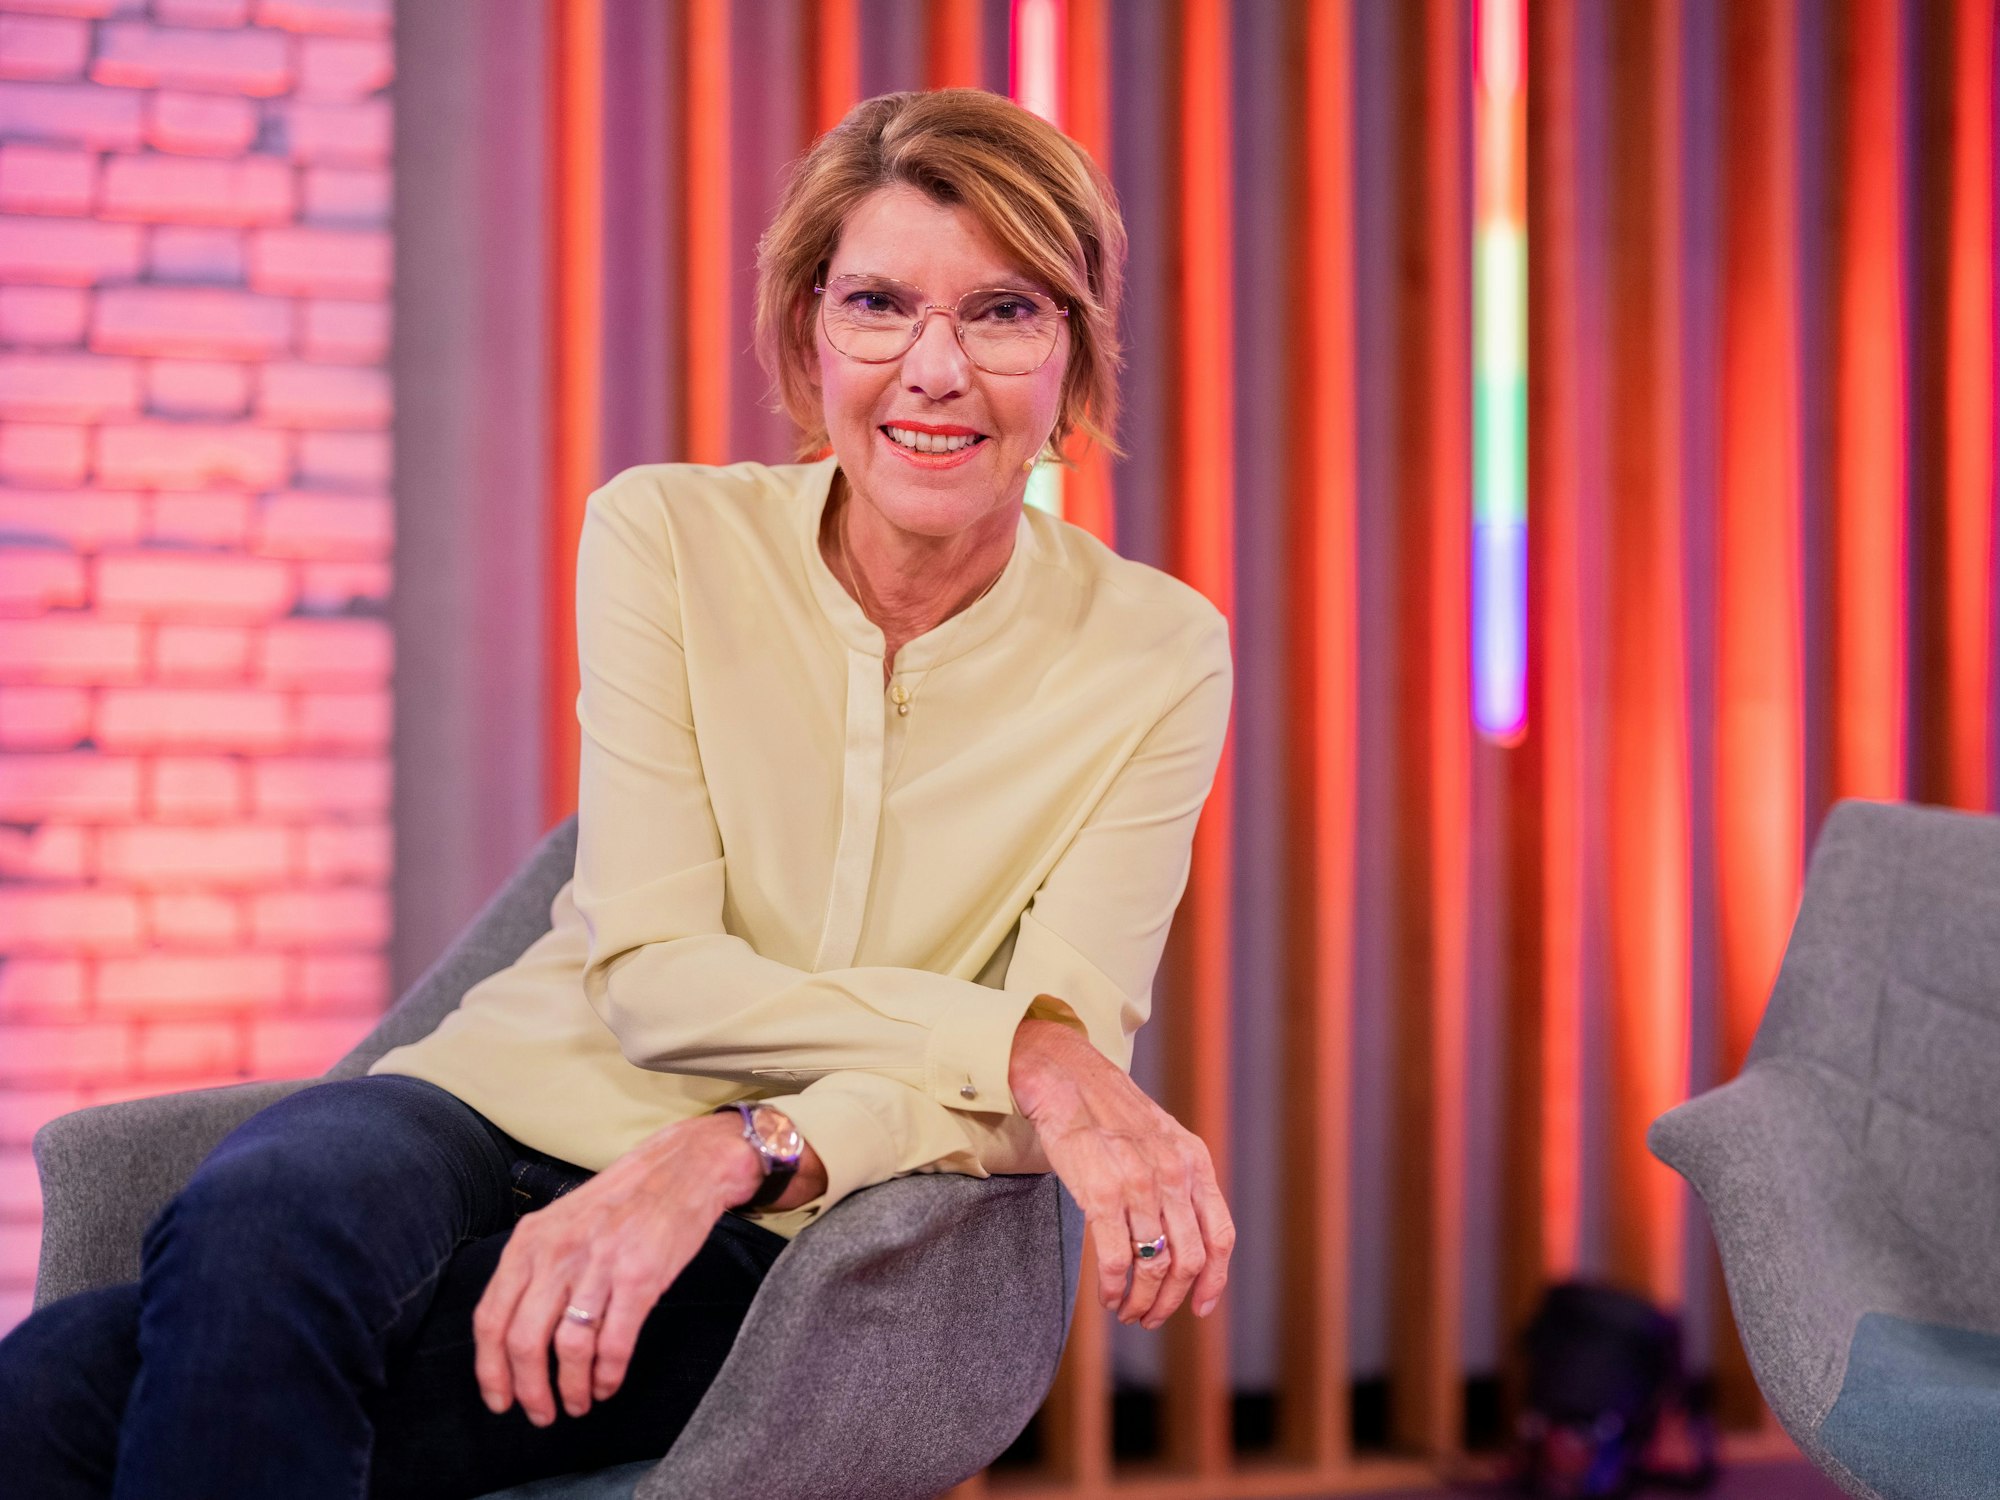 Bettina Böttinger, Moderatorin, sitzt nach der Aufzeichnung der Sendung "Queer in 2021" im Studio.